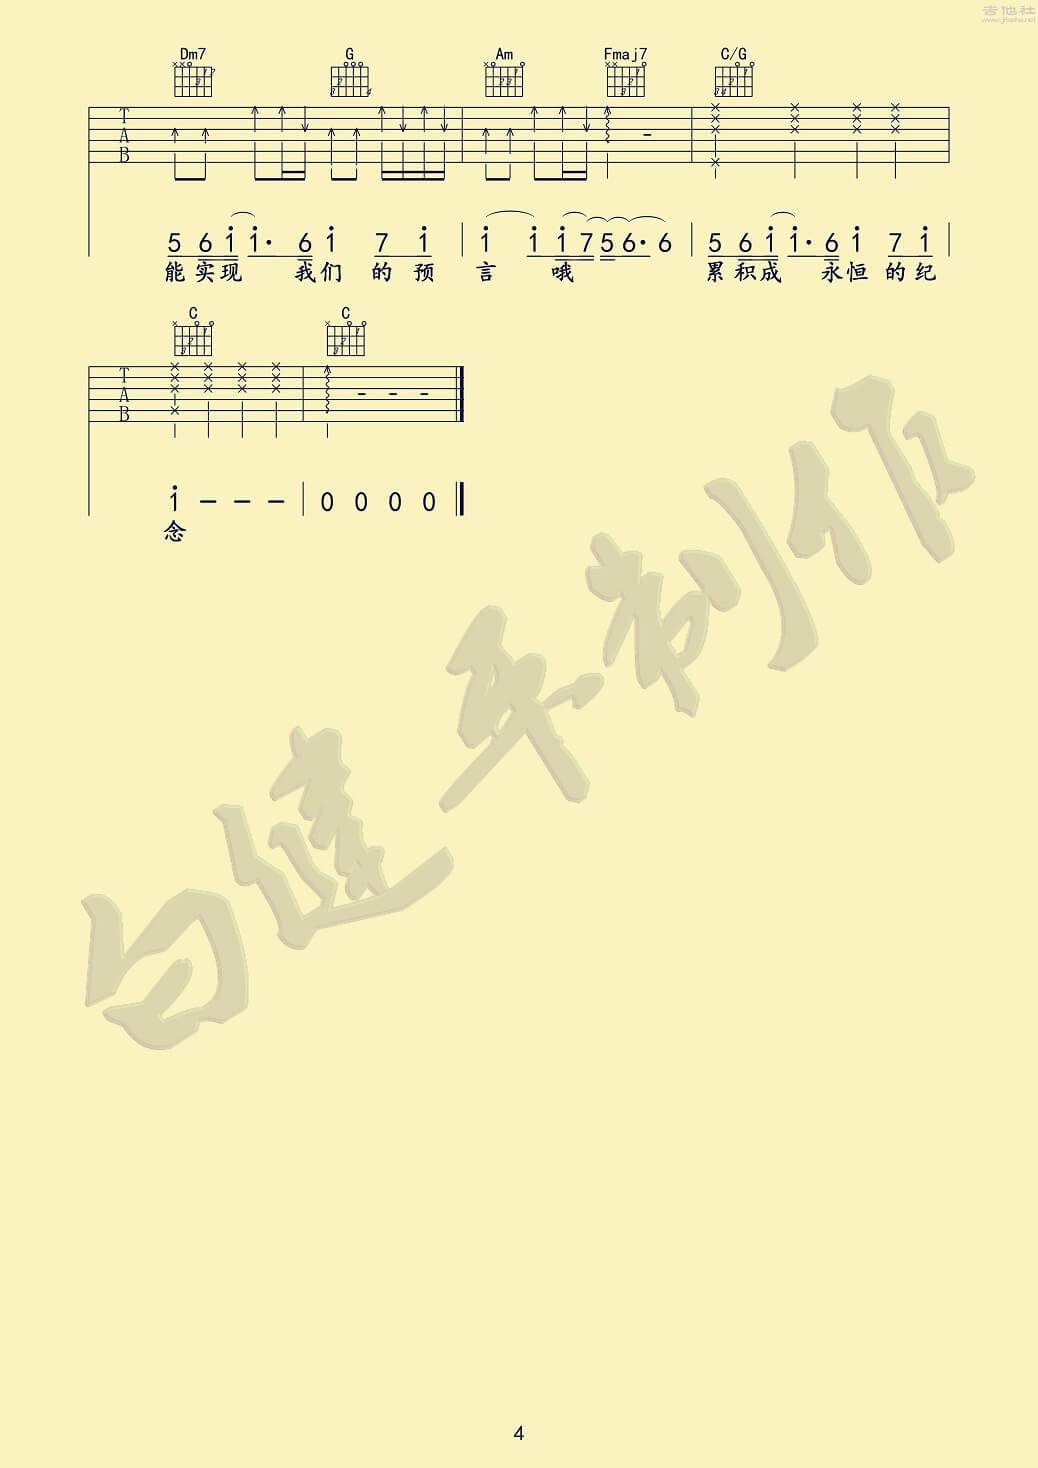 鹿晗 - 我们的明天(电影《重返二十岁》主题曲) 吉他谱